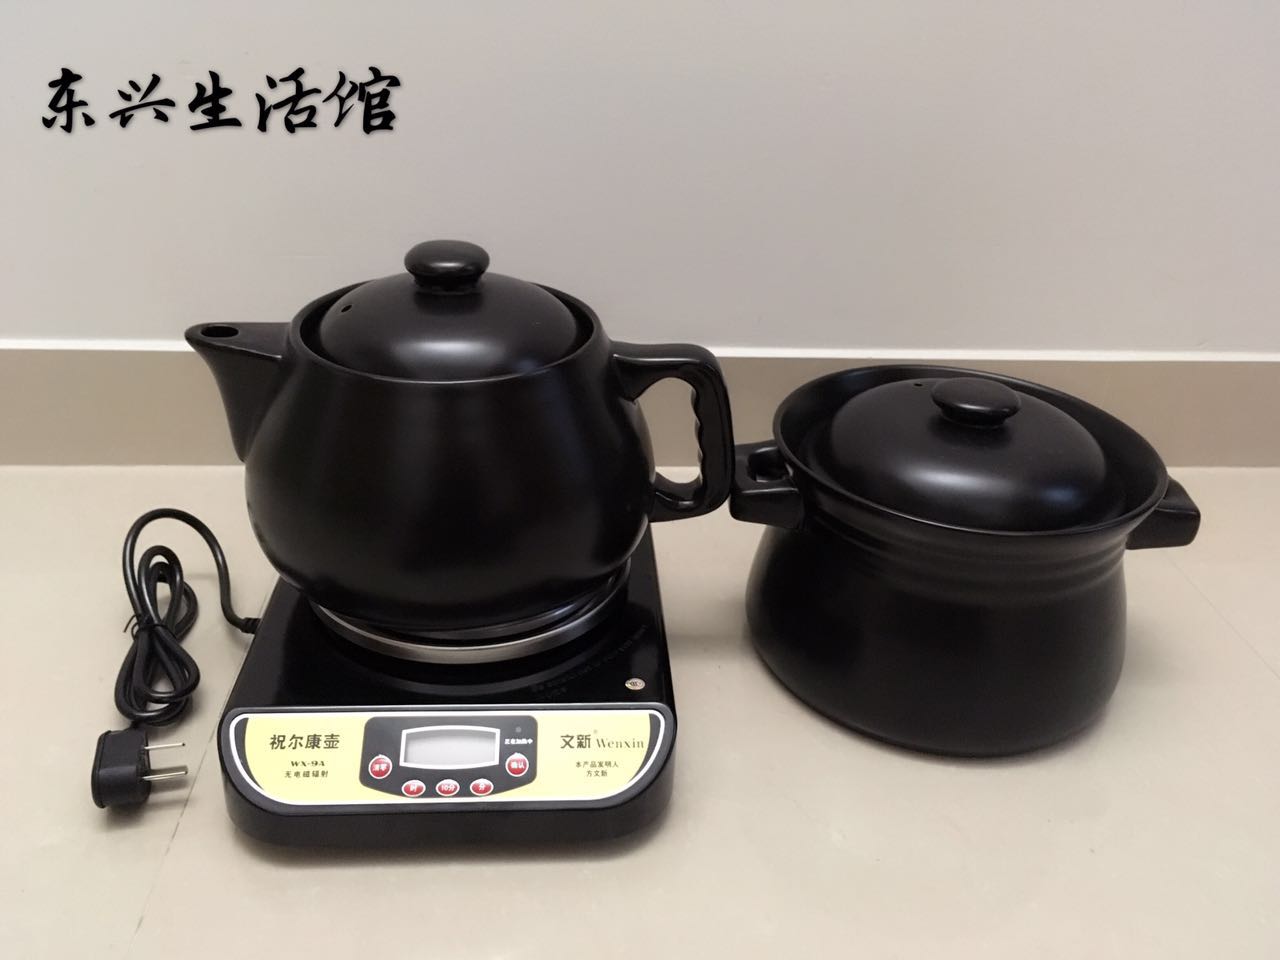 新品文新祝尔康药壶全自动分体式多功能陶瓷煲汤WX-9A保健养生煎